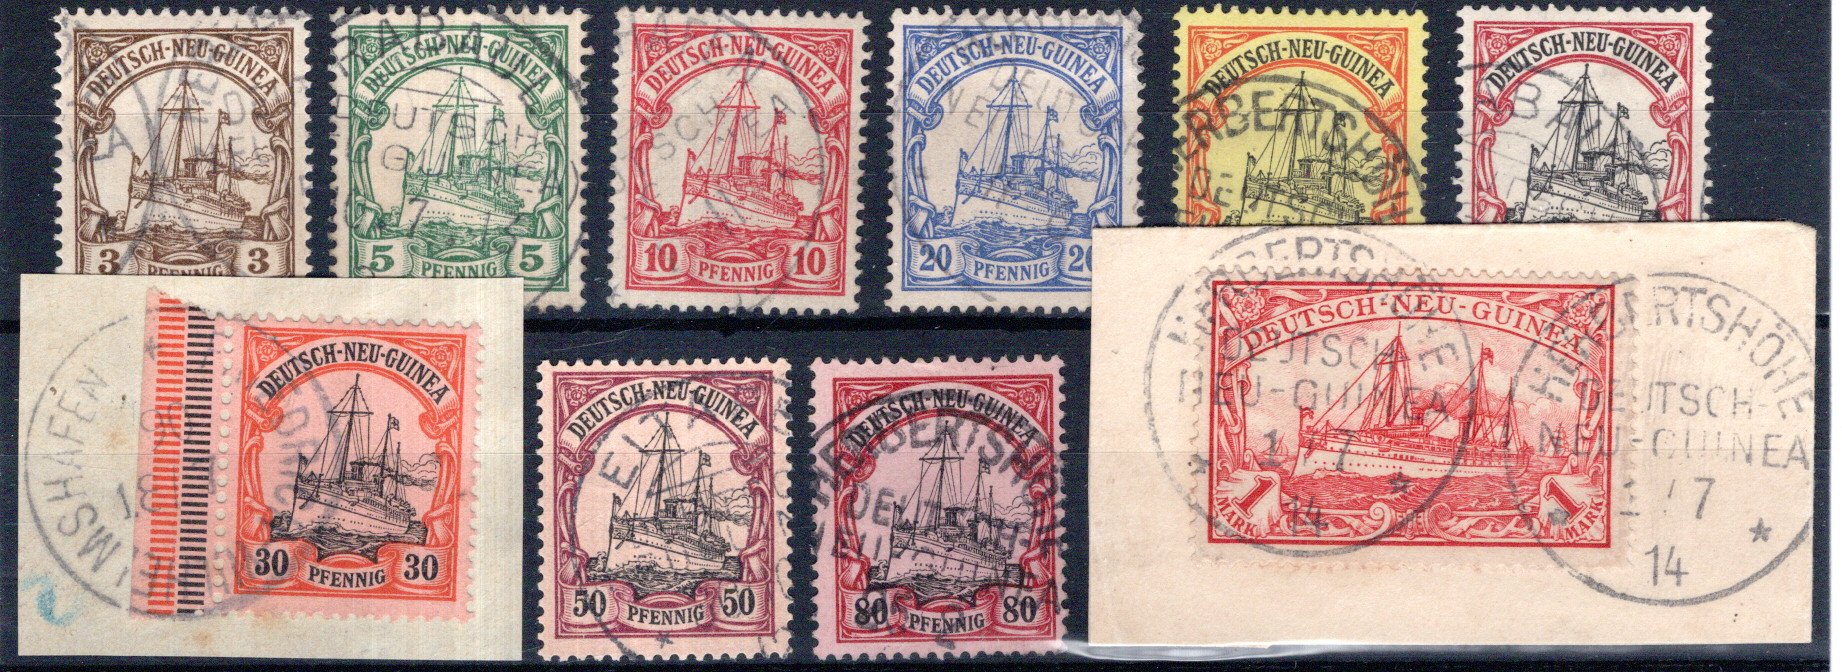 Lot 3335 - germany German Colony New Guinea -  Georg Bühler Briefmarken Auktionen GmbH Georg Bühler 336 auction